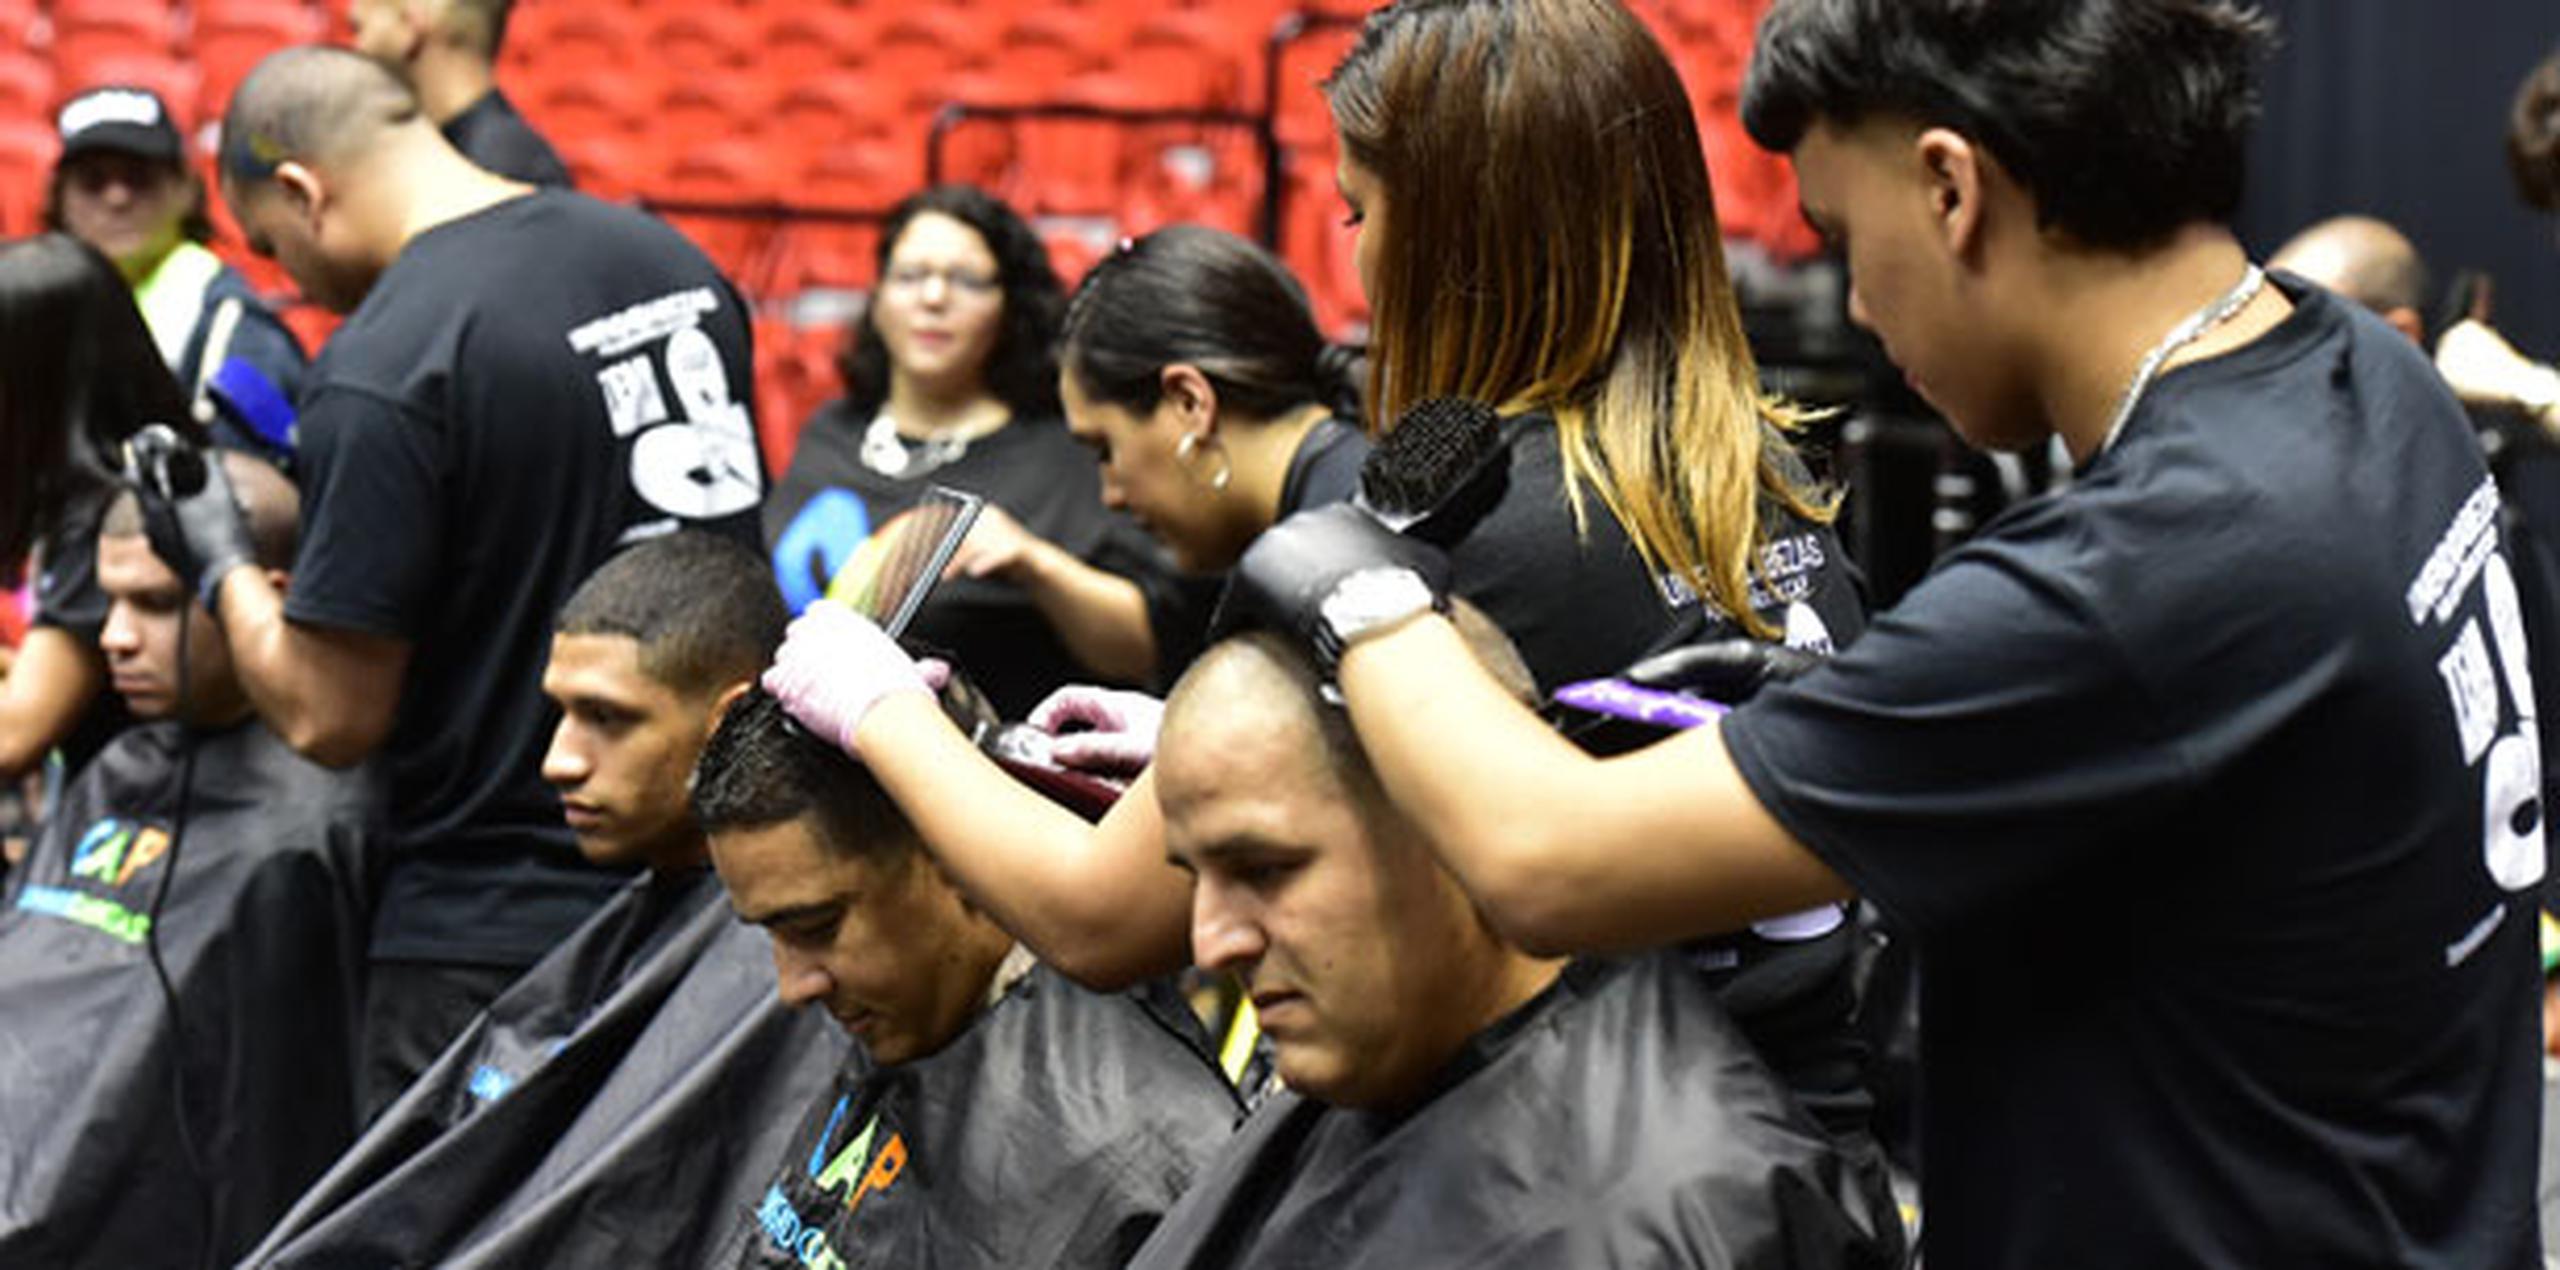 Fernando Gil Enseñat, jefe de Vivienda, se unió hoy a cientos de puertorriqueños que se raparon la cabeza y donaron su cabello. (luis.alcaladelolmo@gfrmedia.com)